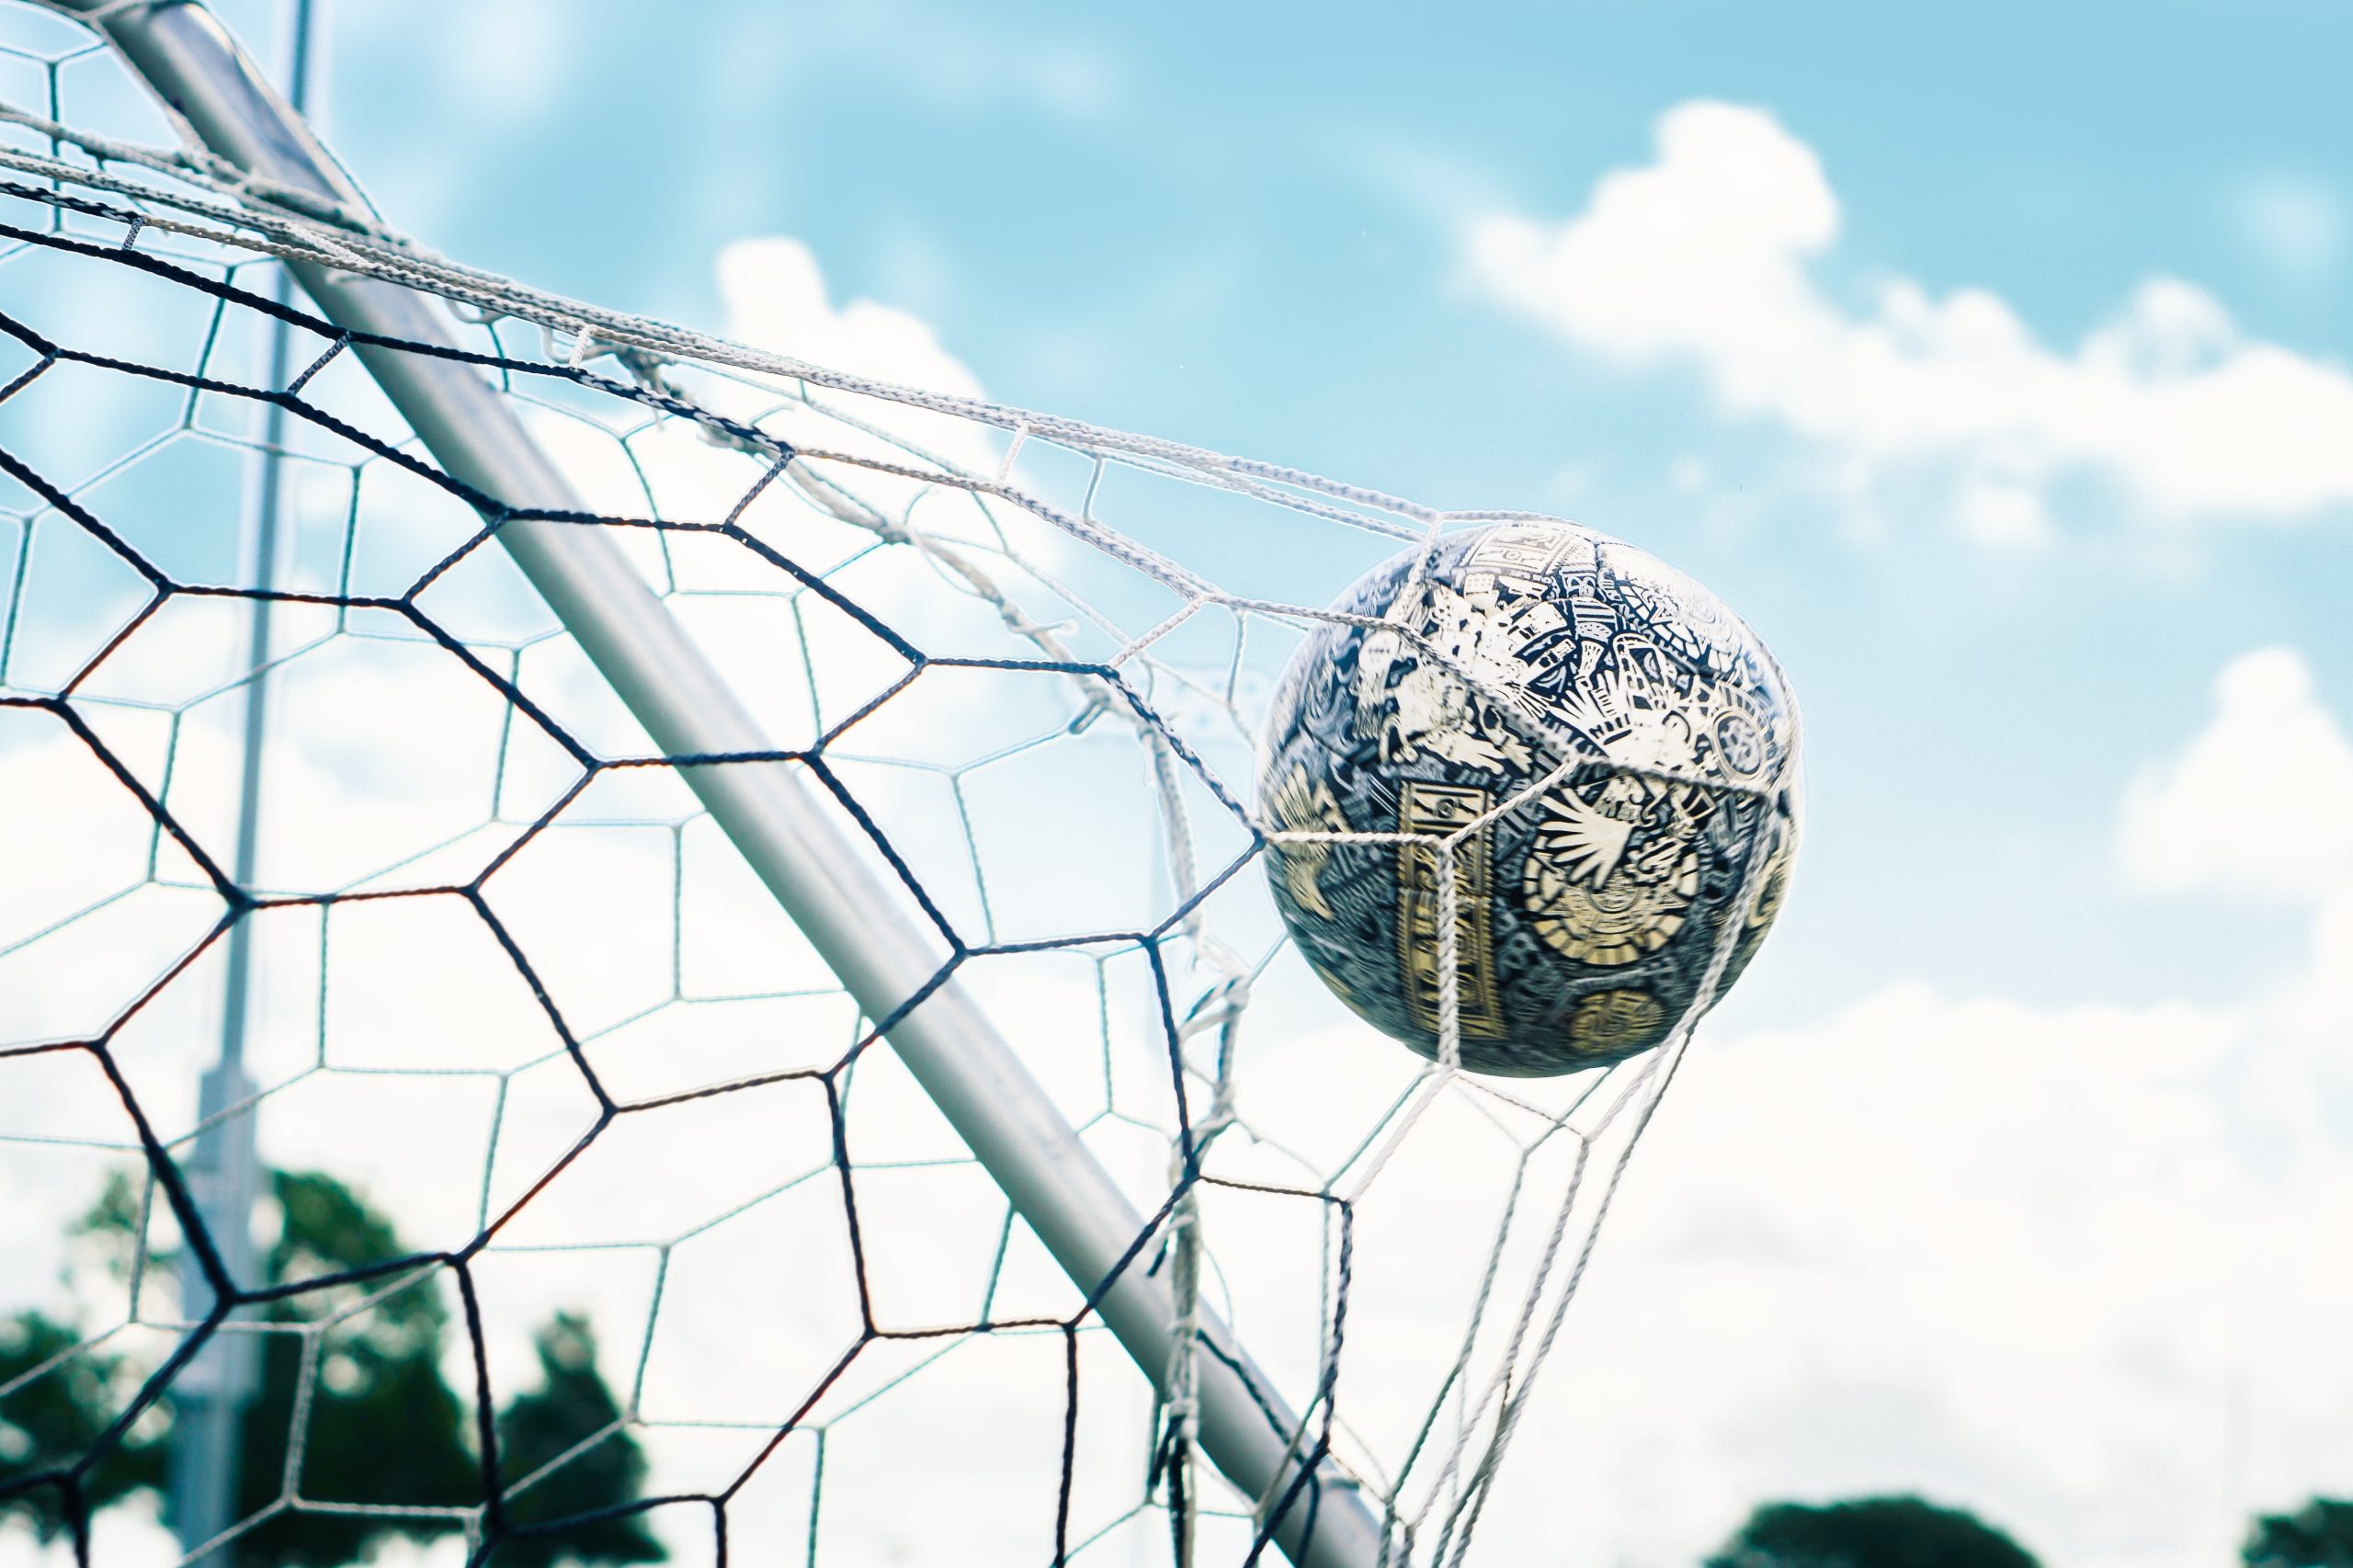 Soccer ball in the net 